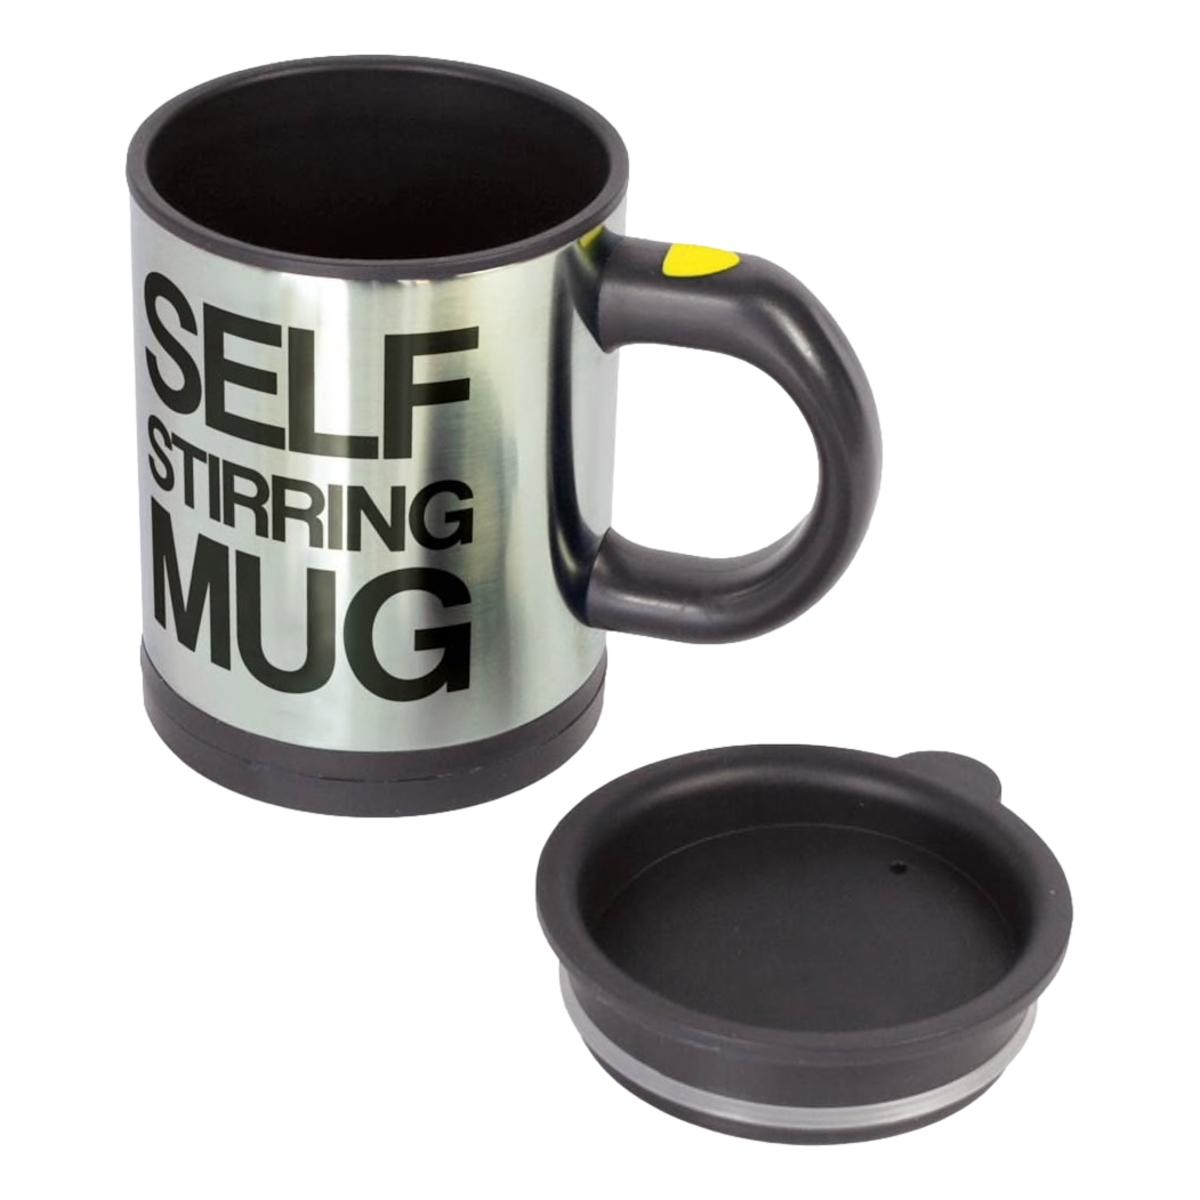 Cana cu amestecare automata, Self-Stirring Mug